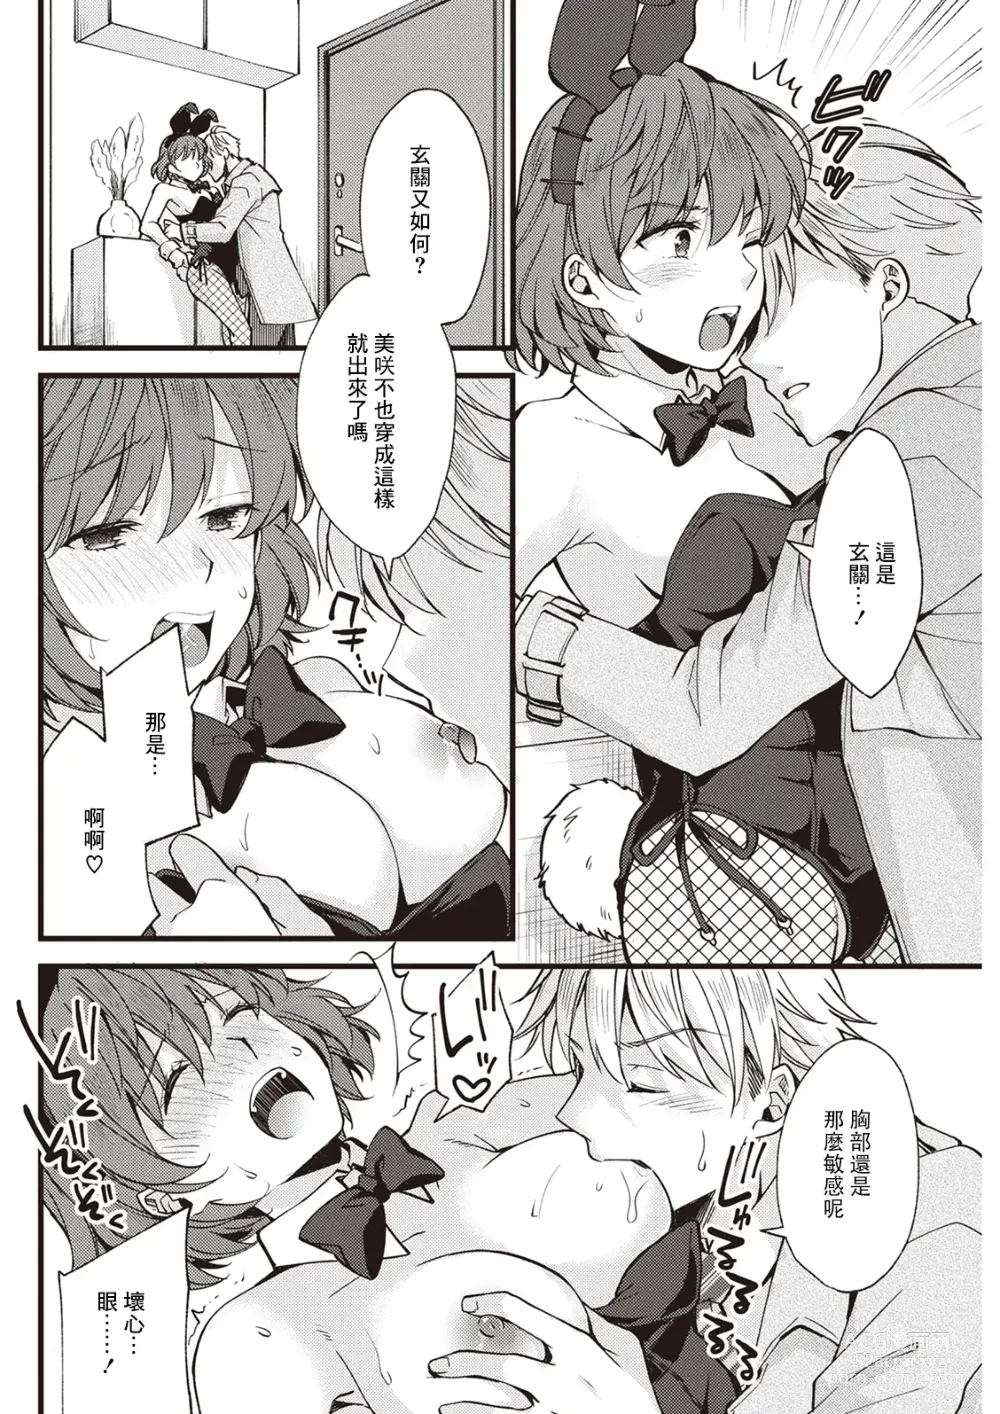 Page 6 of manga Koi wa Just in me